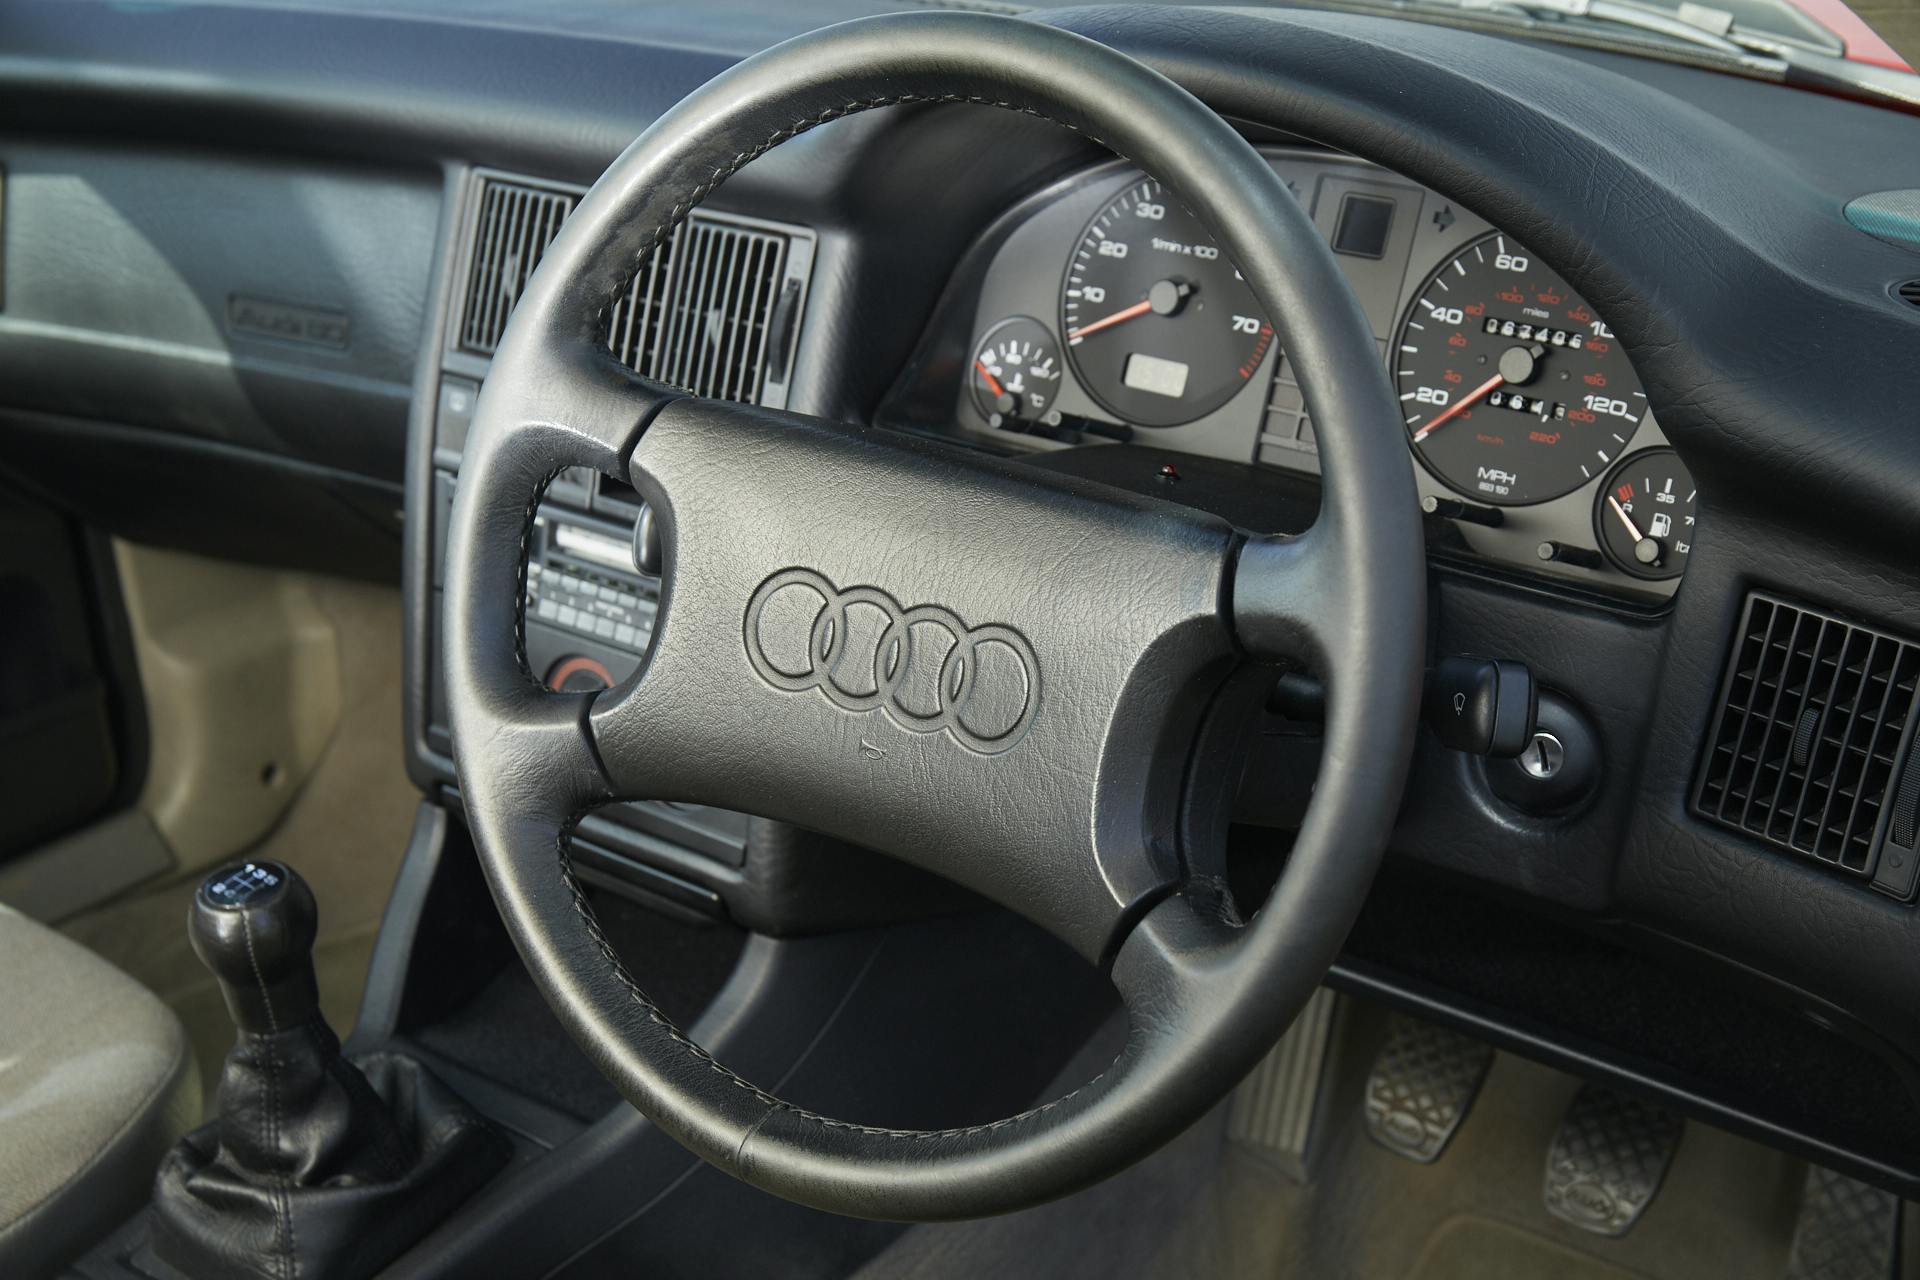 Audi 80 steering wheel detail